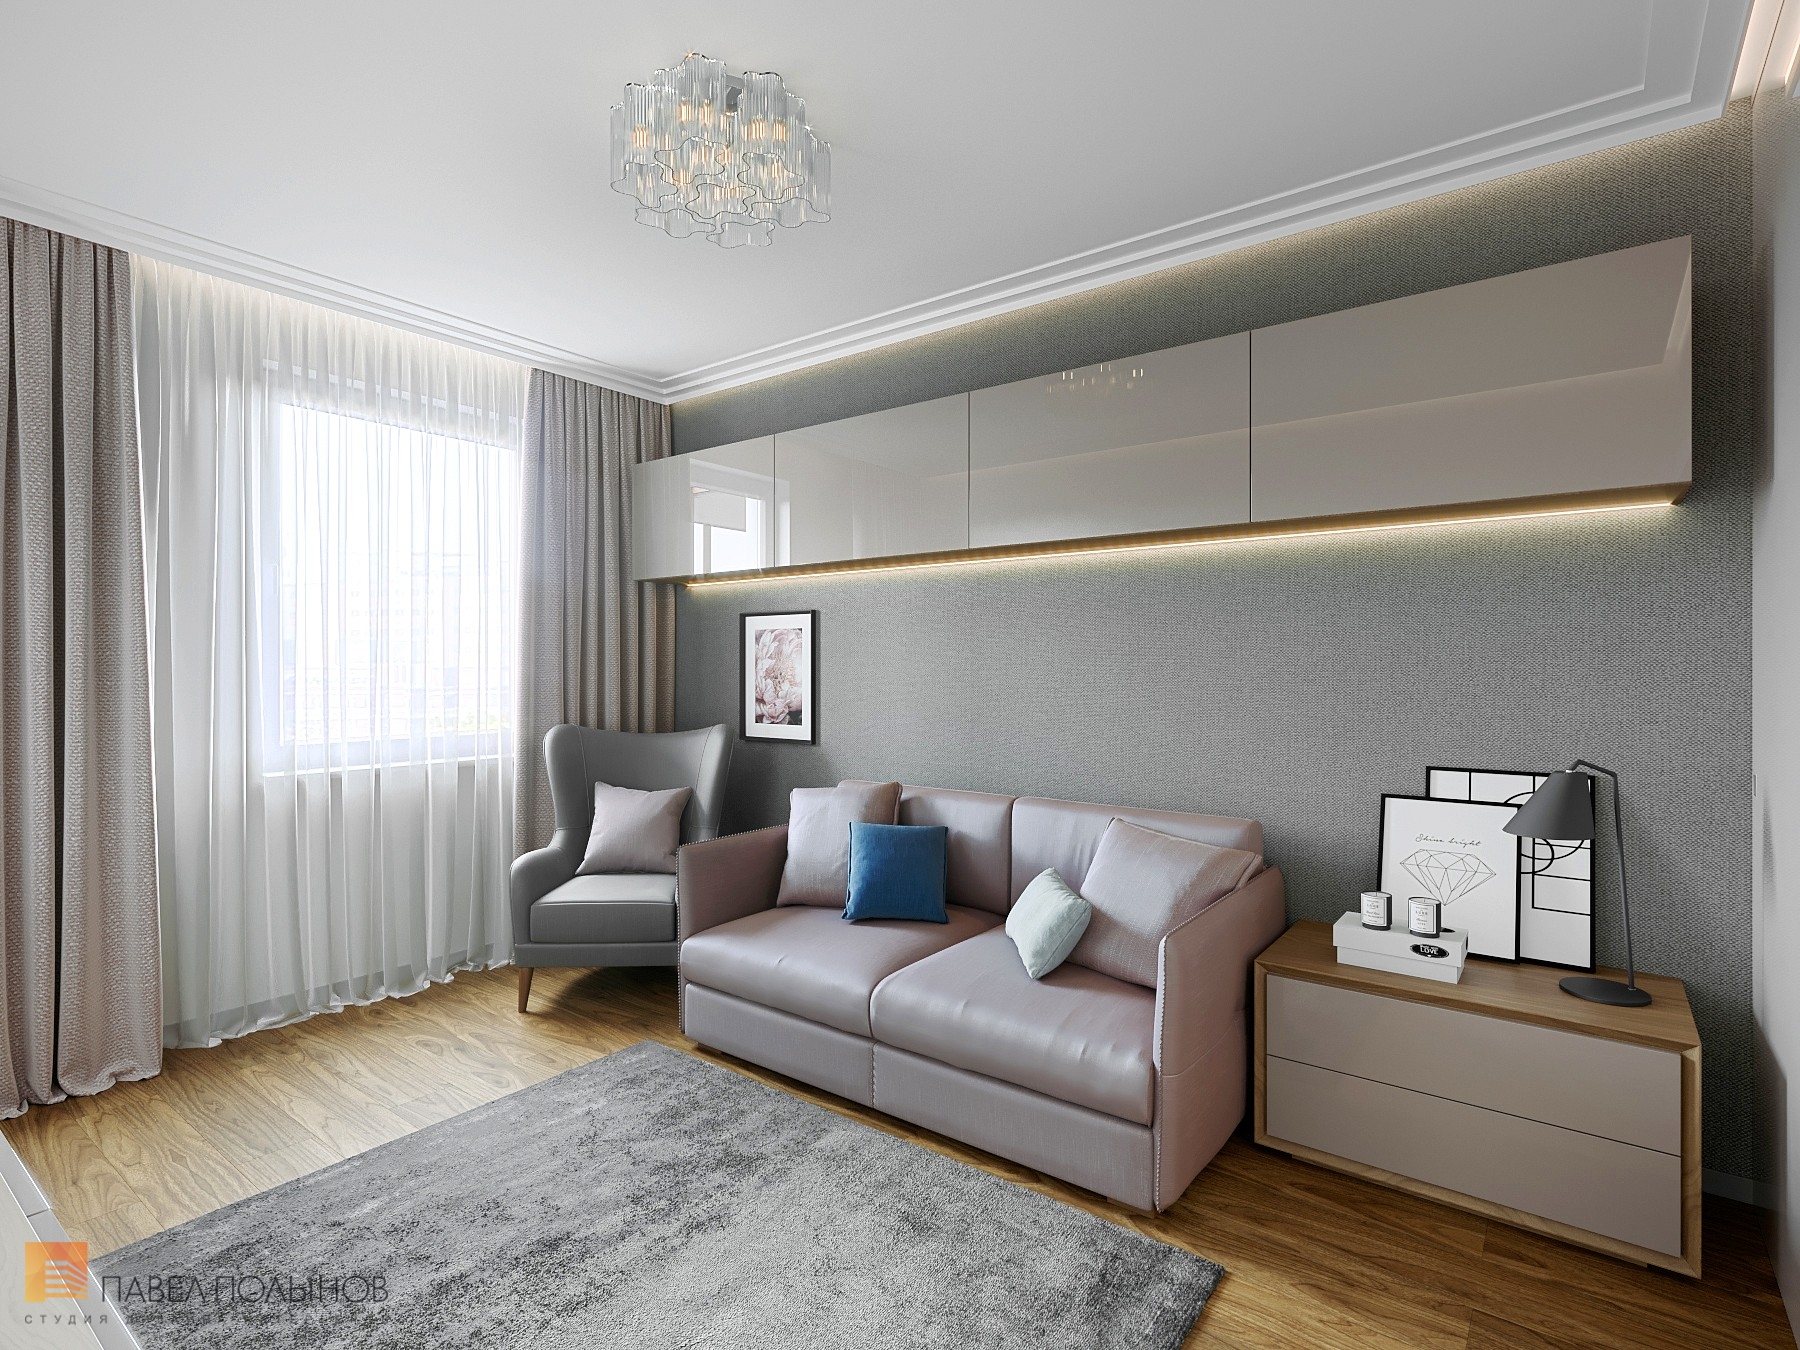 Фото вторая спальня из проекта «Интерьер квартиры с современном стиле с элементами скандинавского, ЖК «Skandi Klubb», 77 кв.м.»